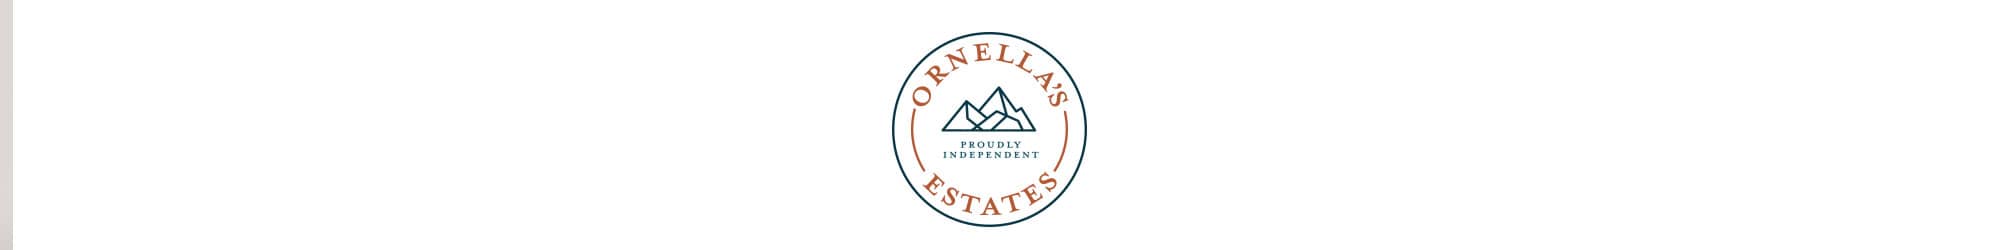 Ornella’s Estates Ltd in Briar Rhydding